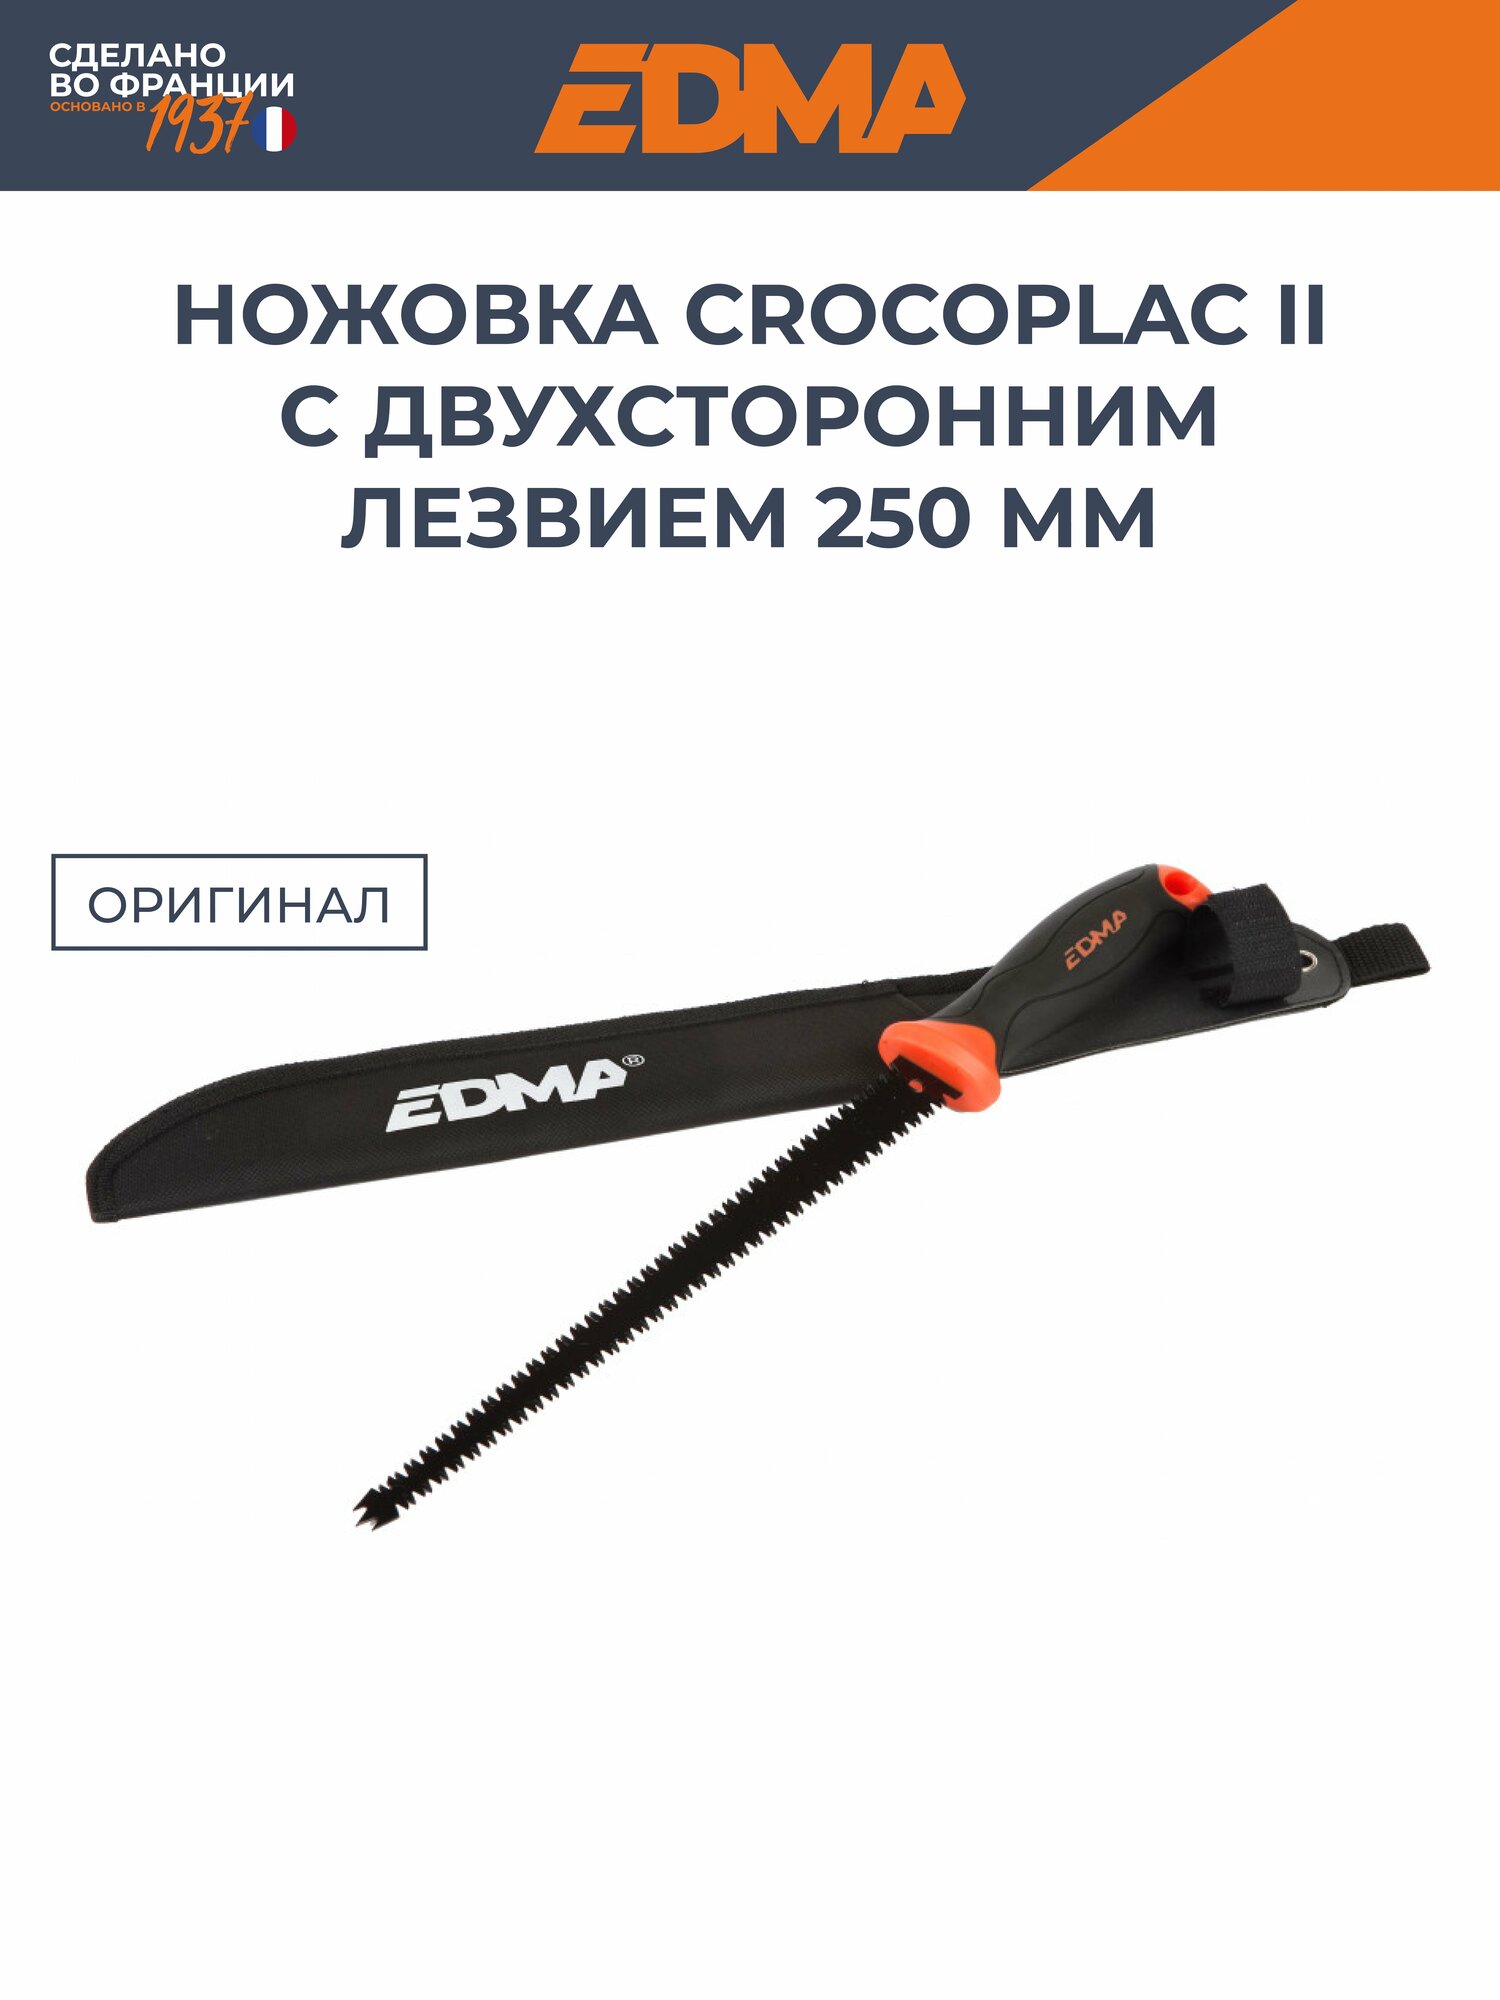 Ножовка EDMA Crocoplac II с двухсторонним лезвием 250мм